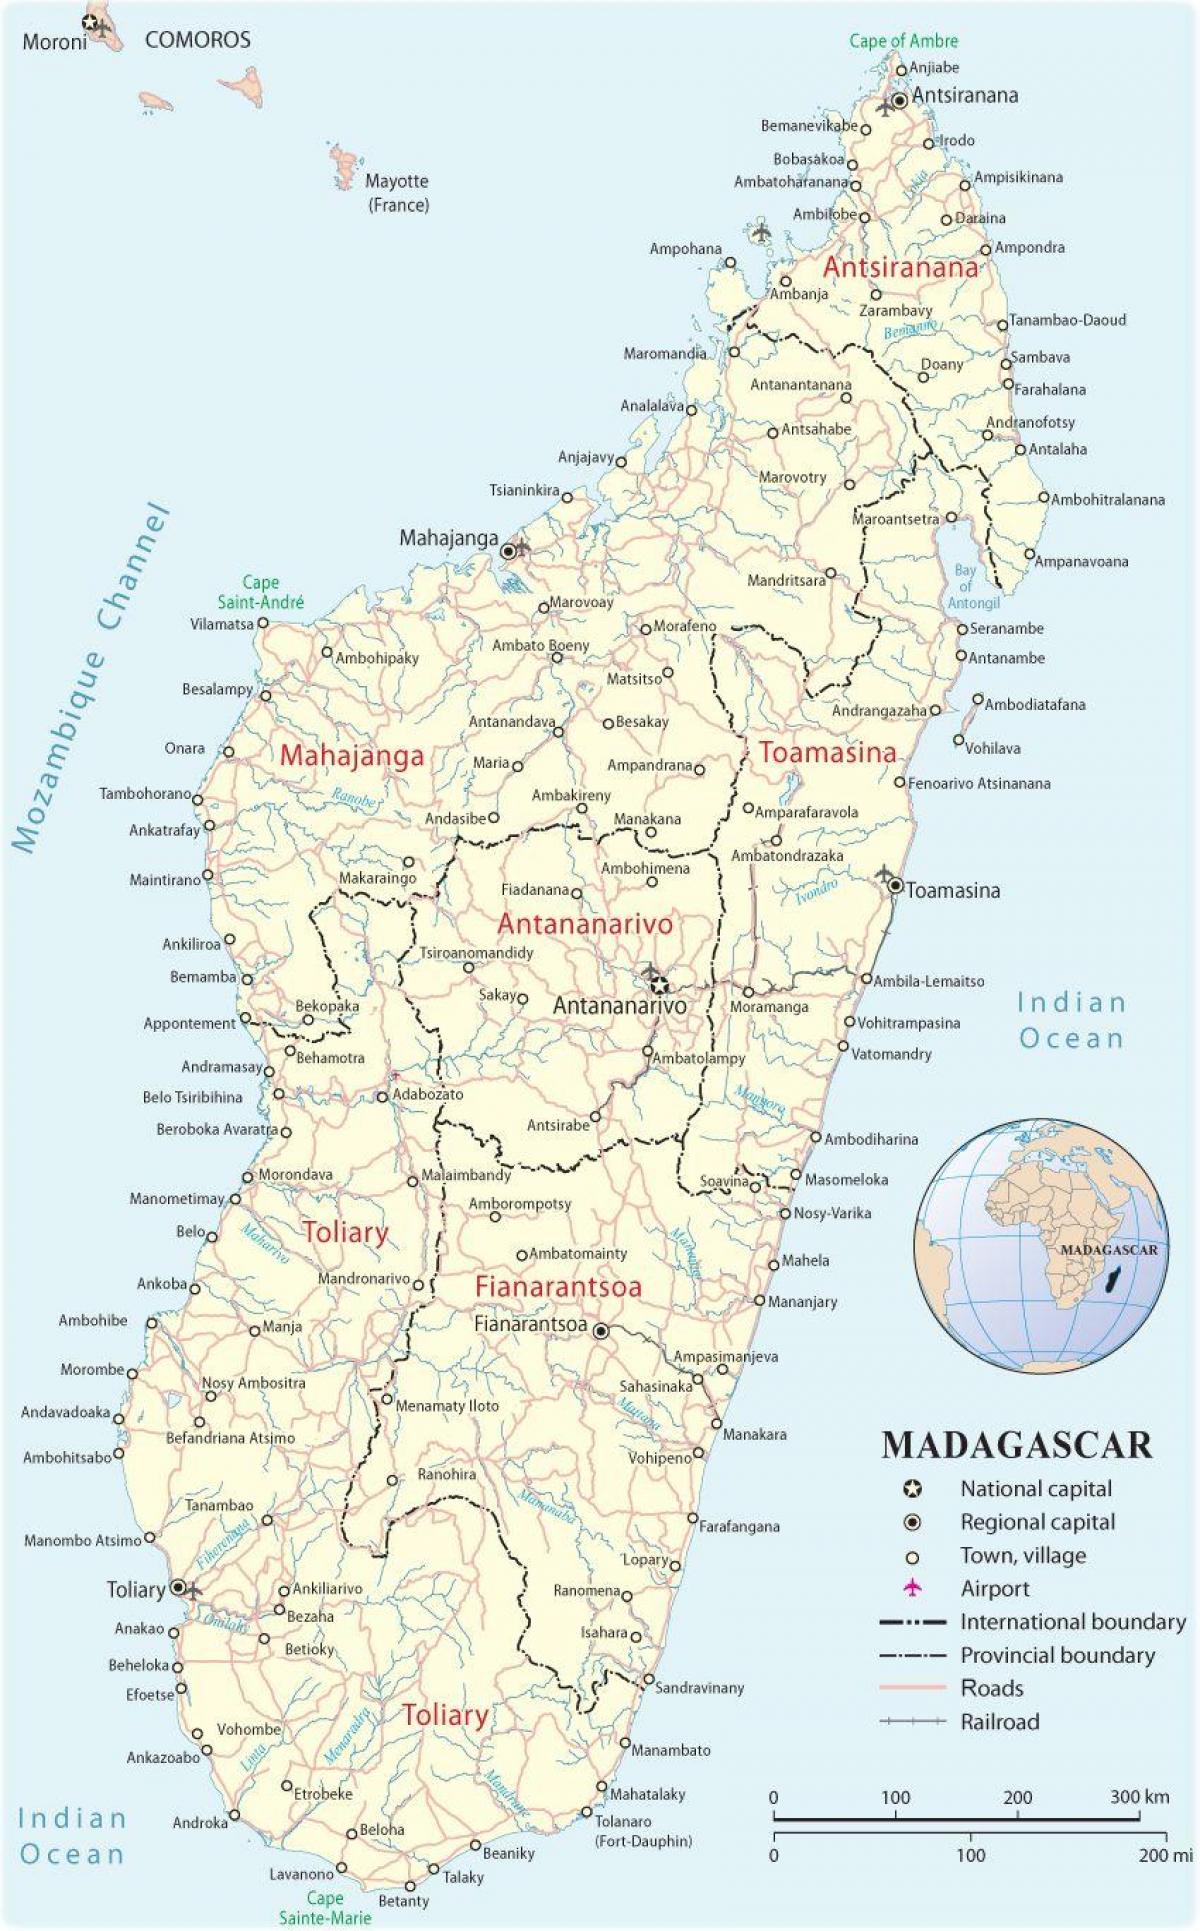 નકશો મેડાગાસ્કર ઓફ એરપોર્ટ